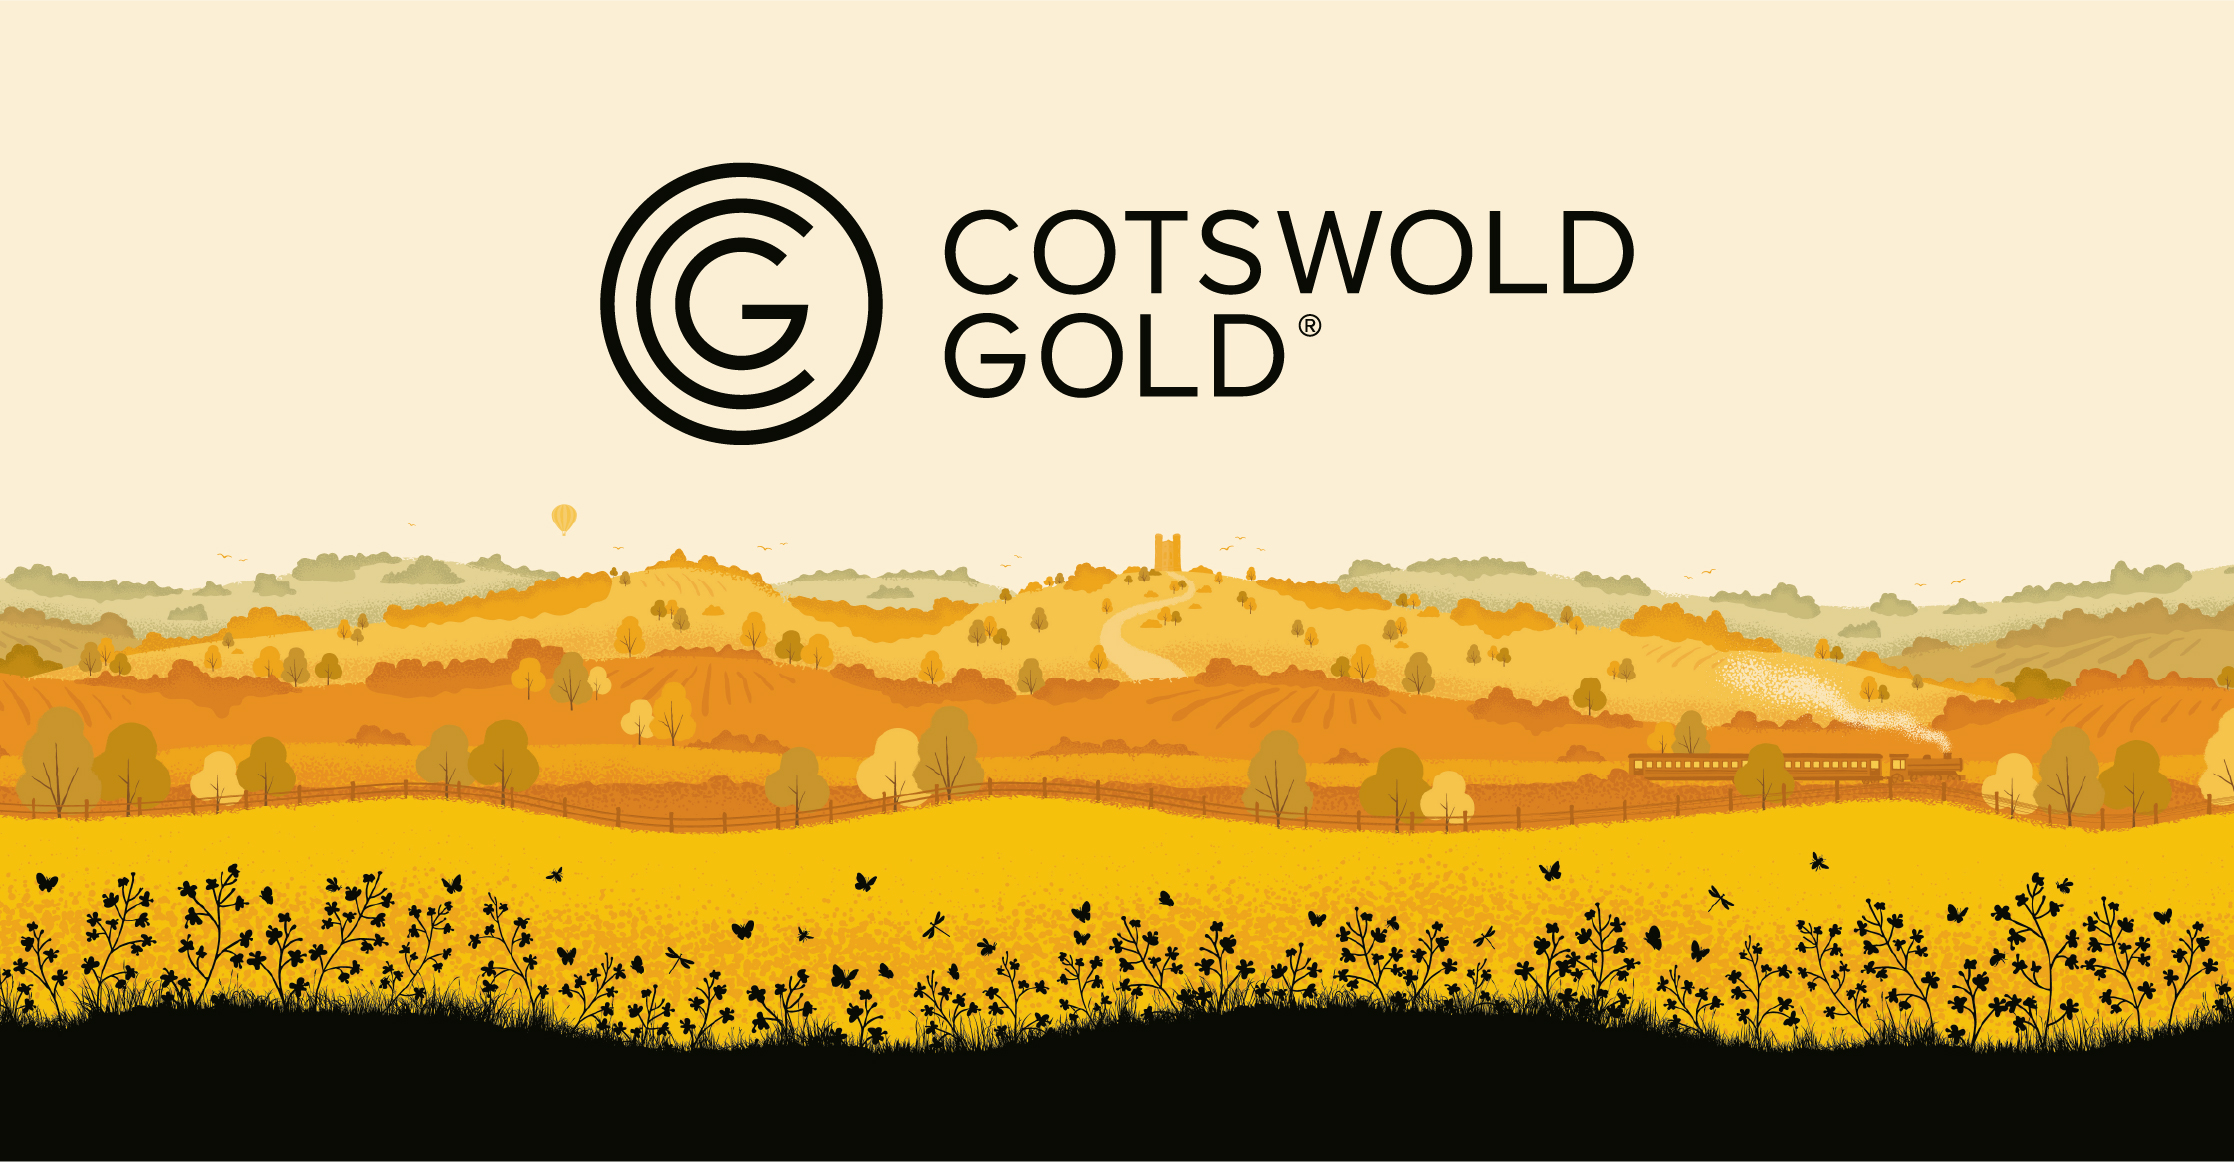 Cotswold Gold Illustration design